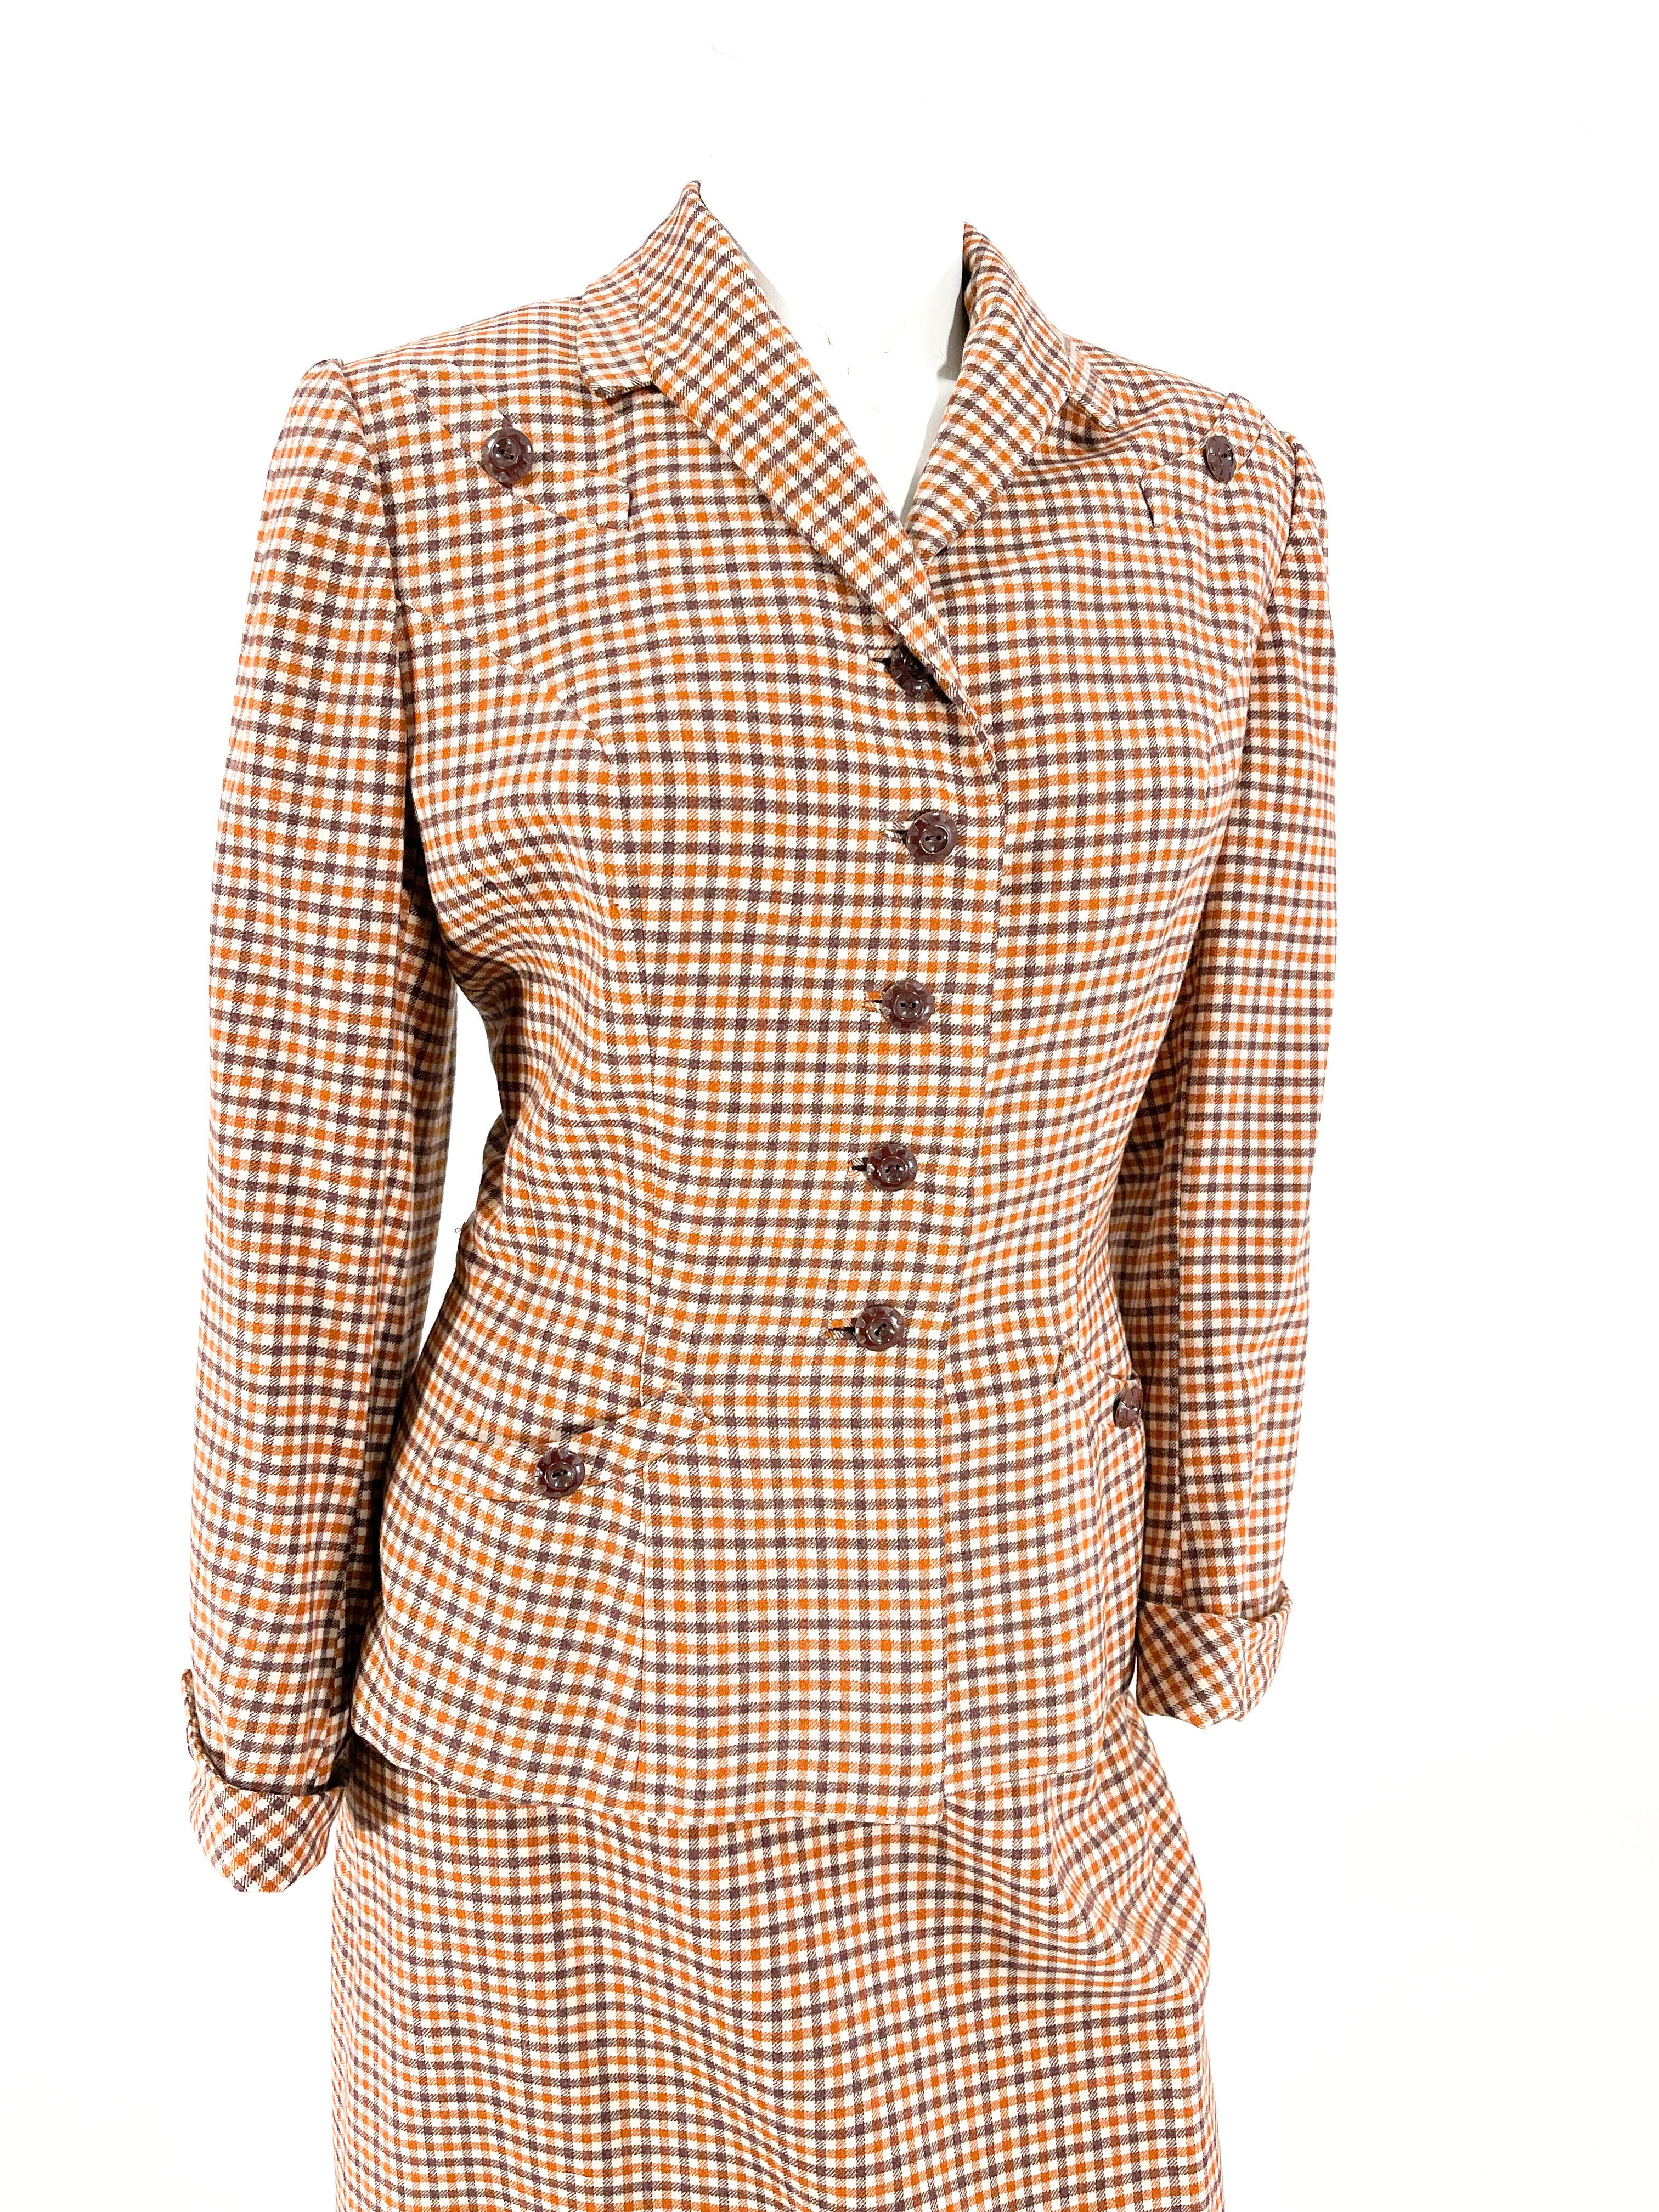 Ensemble veste et jupe en laine à carreaux blanc cassé, marron et rouille des années 1940. La veste du costume présente un col à encoche modifié, des épaules paddées, deux poches supérieures à faux sourire, des boutons marron chocolat, des